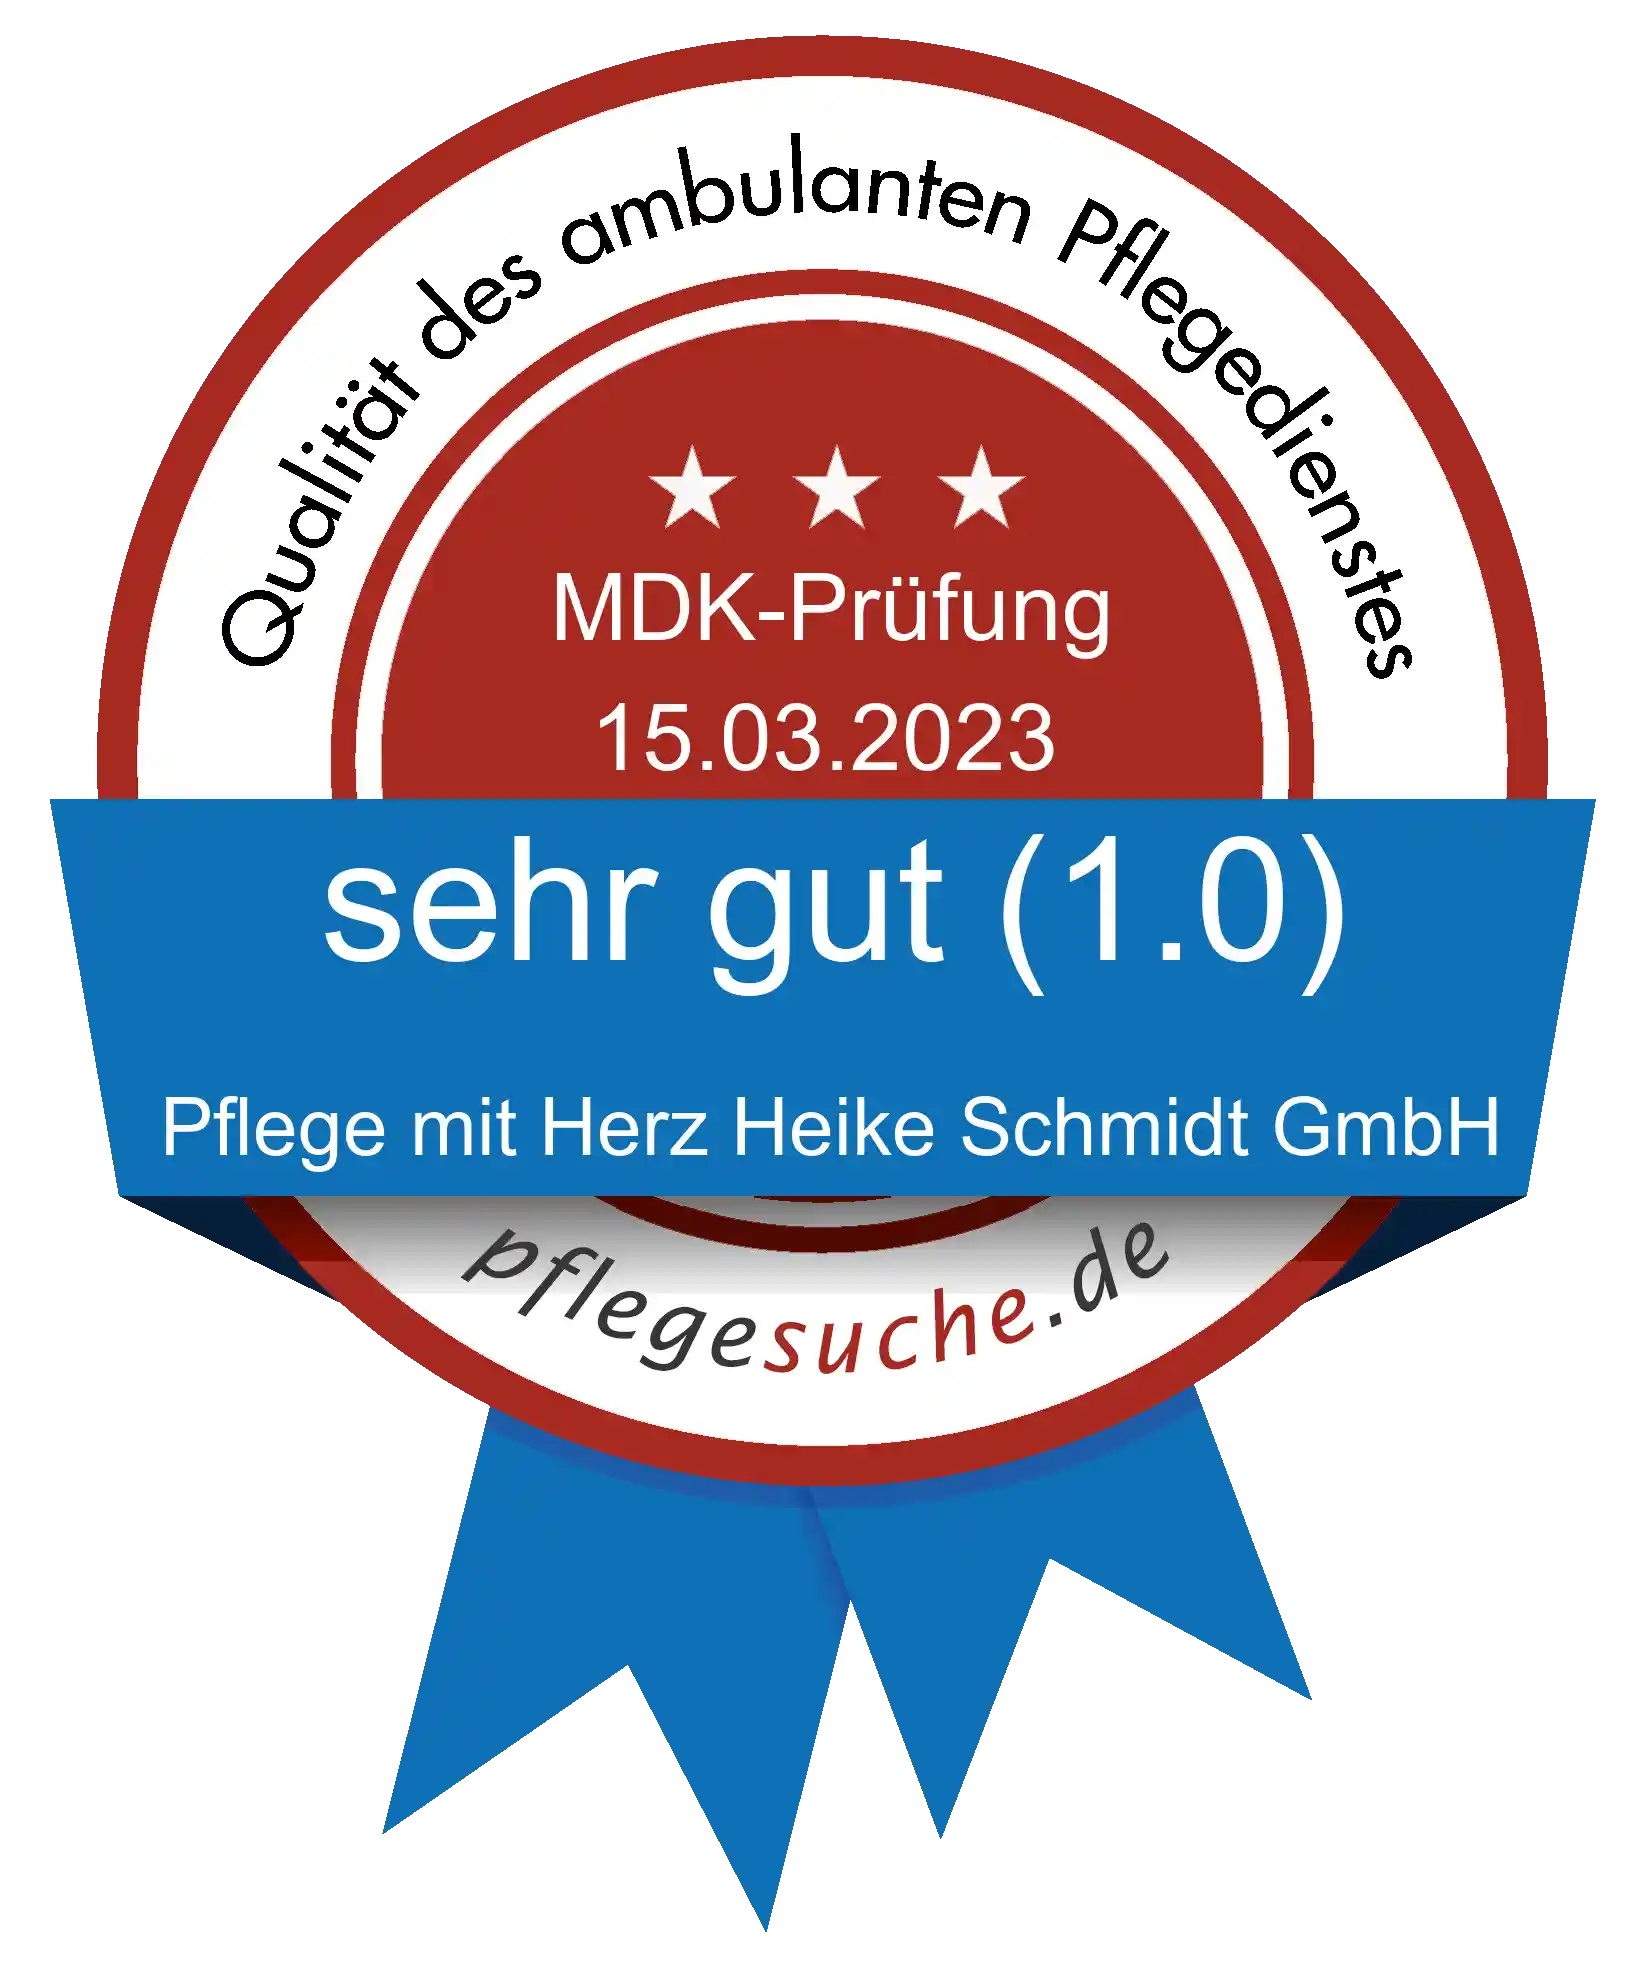 Siegel Benotung: Pflege mit Herz Heike Schmidt GmbH